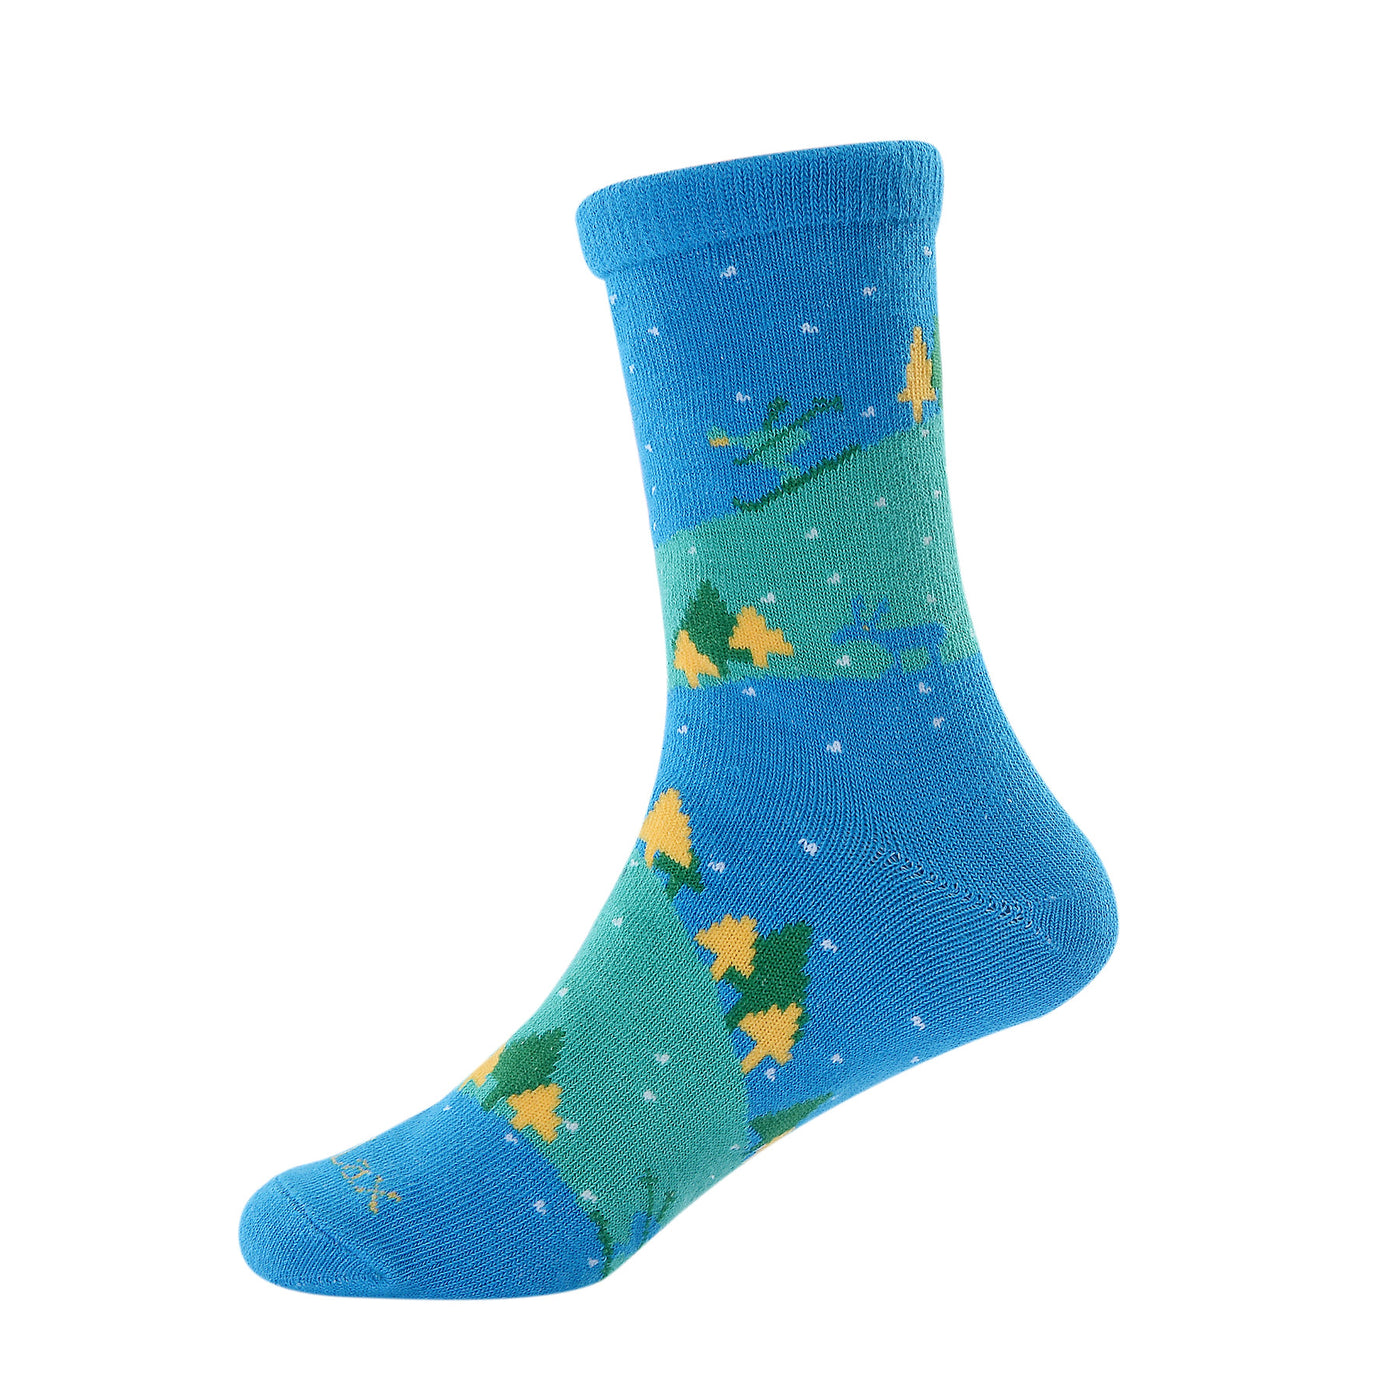 6 pares de calcetines de algodón peinado para niño - Árbol de Navidad - Talla UK Junior 9-11.5/Europa 27-30